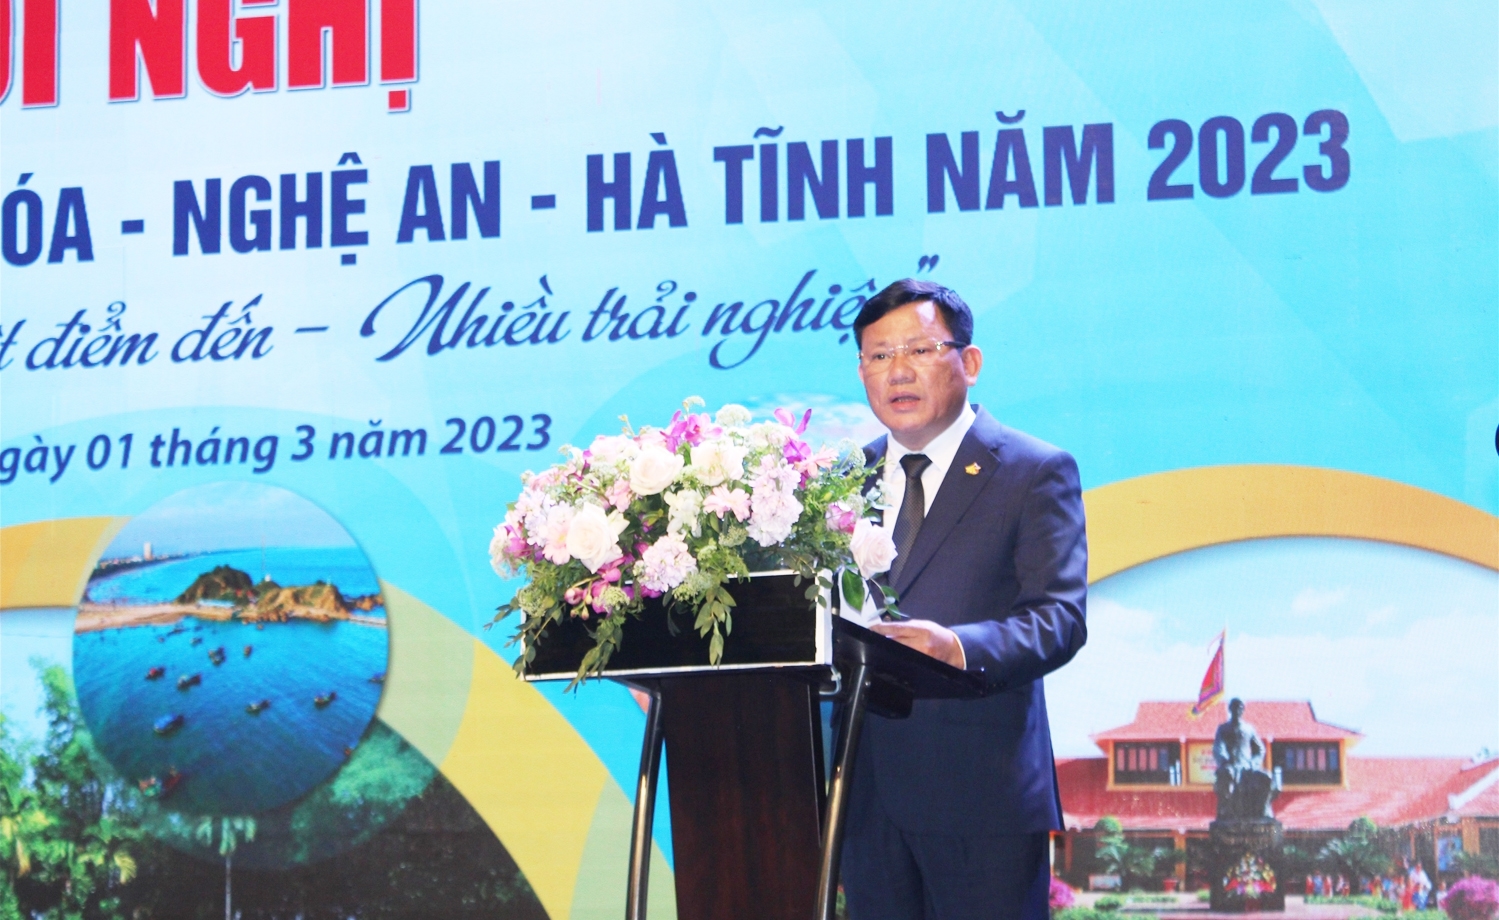 Ông Nguyễn Văn Thi - Phó Chủ tịch UBND tỉnh Thanh Hóa phát biểu tại Hội nghị